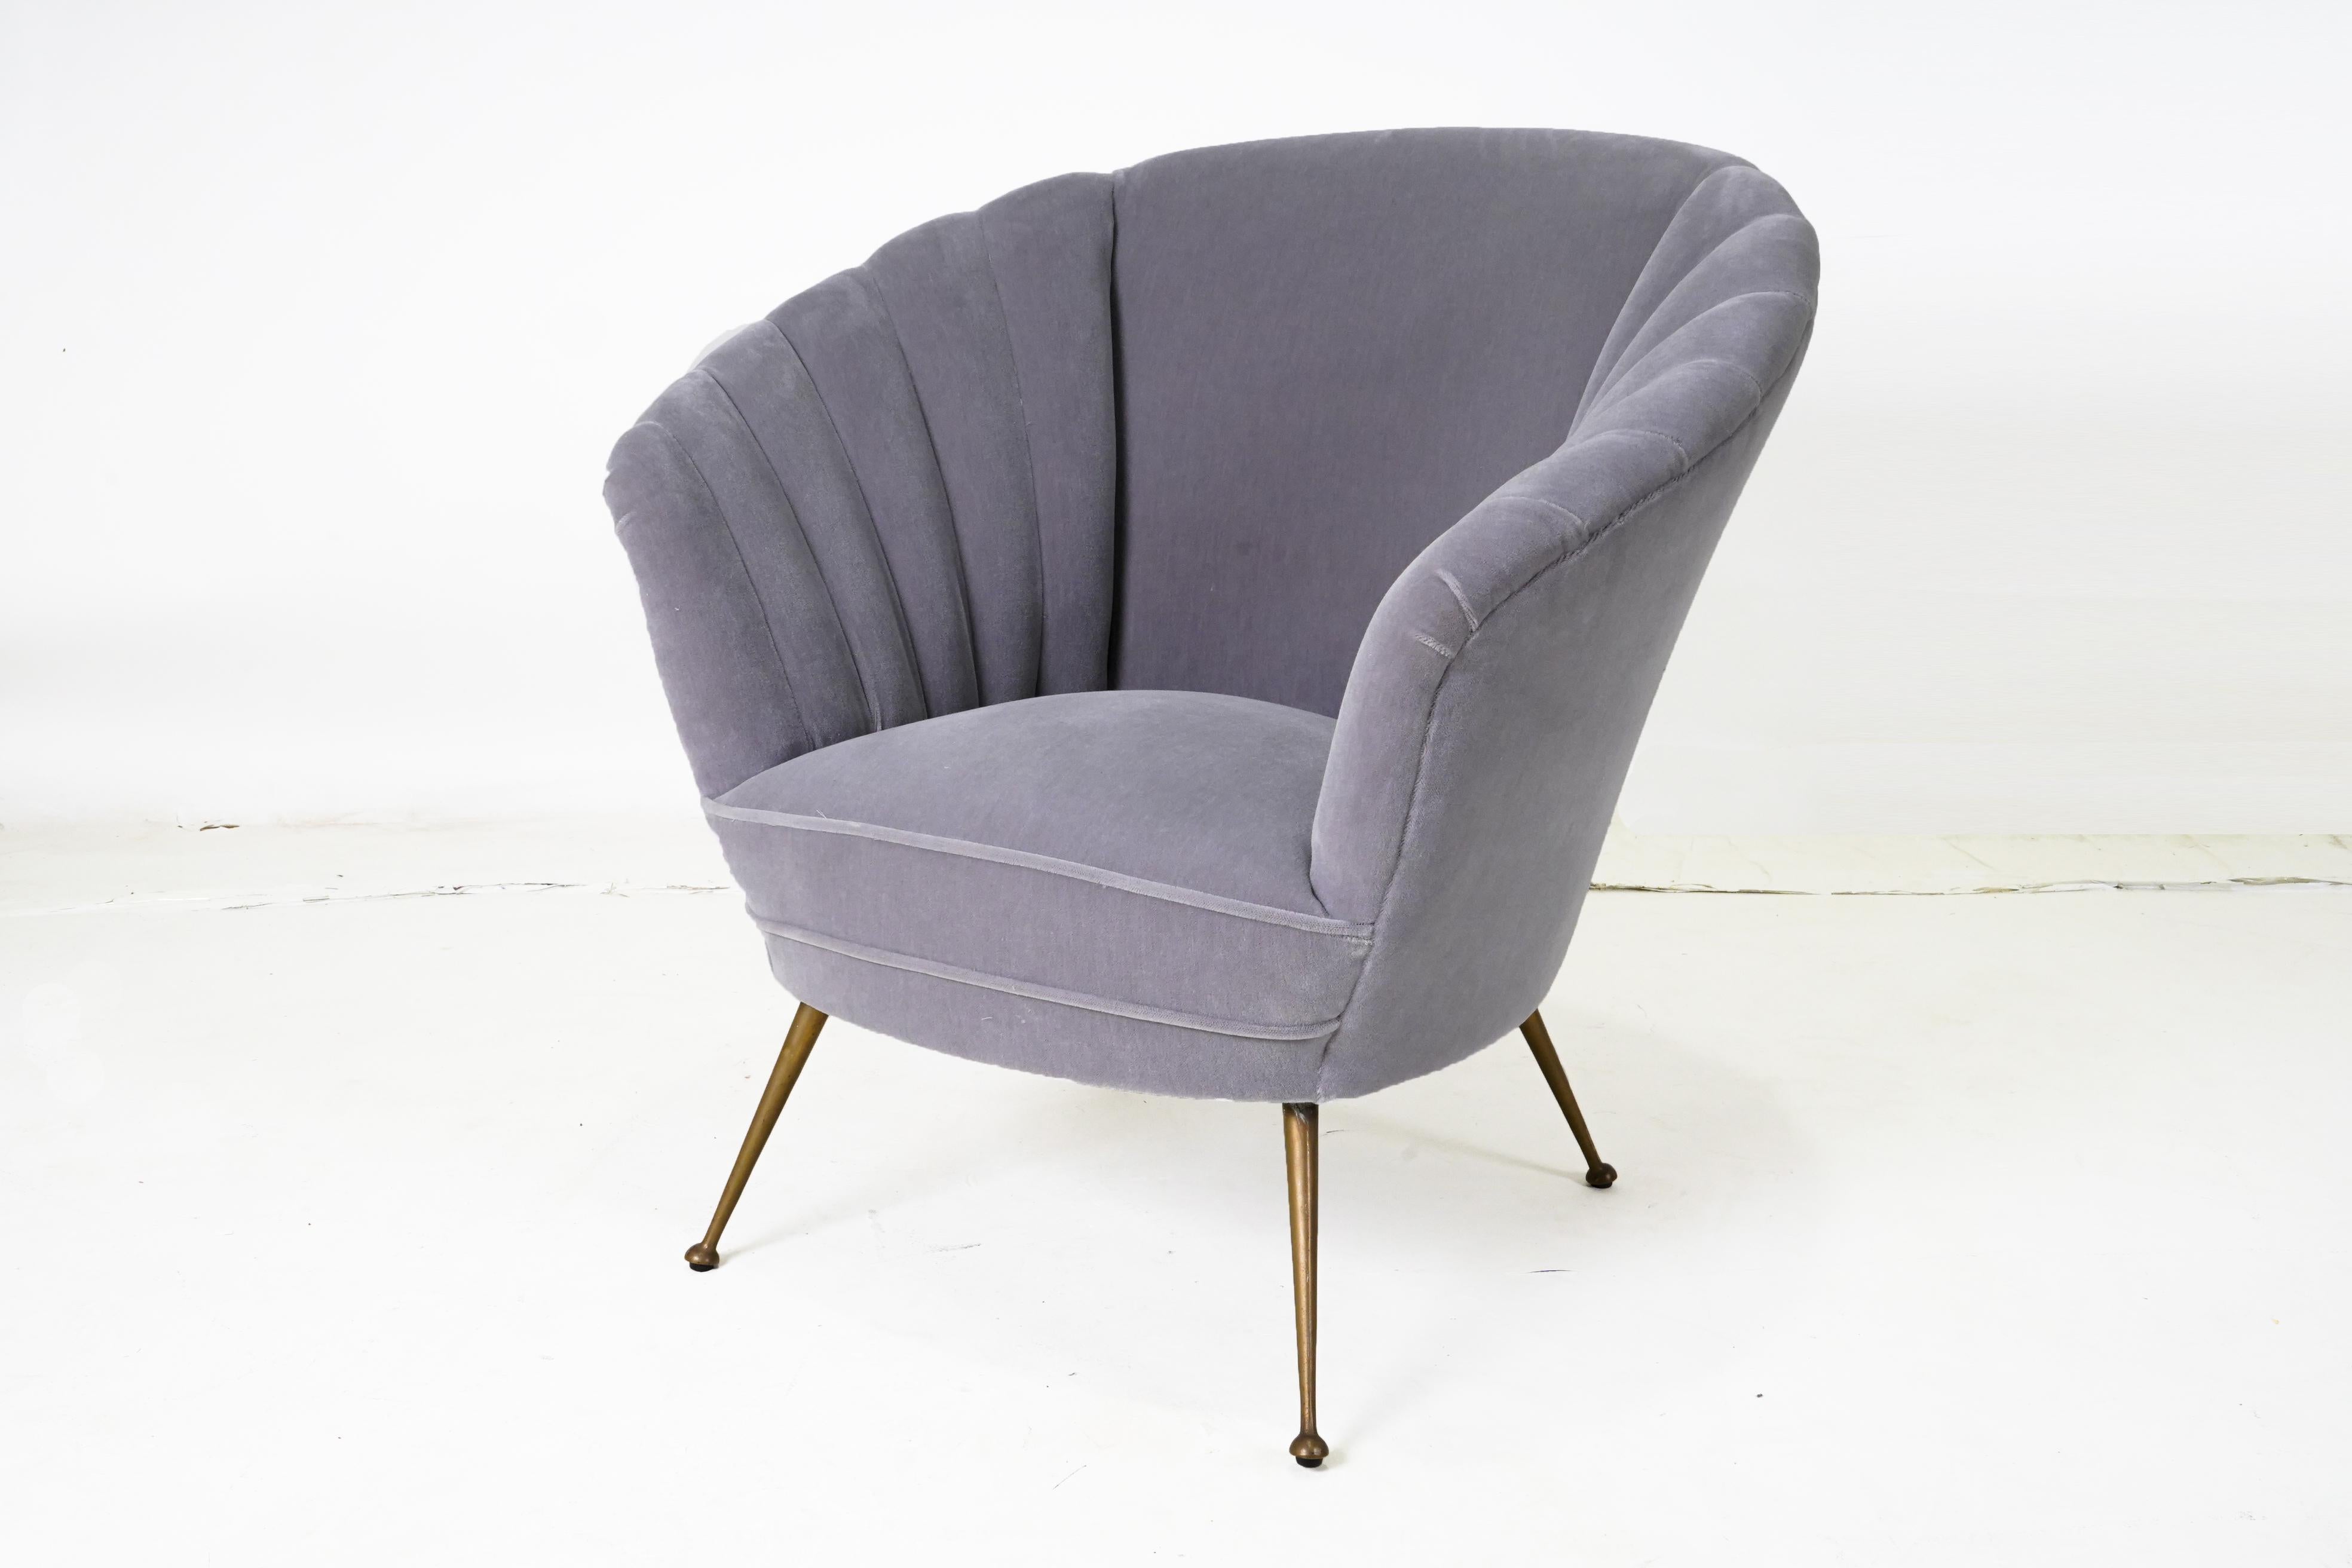 Diese stilvollen Mid-Century-Sessel wurden in den 1950er Jahren in Italien hergestellt. Sie zeichnen sich durch eine sanft geneigte, tonnenförmige Rückenlehne mit schöner Rillenstruktur aus. Die Stühle stehen auf spitz zulaufenden, zylindrischen,